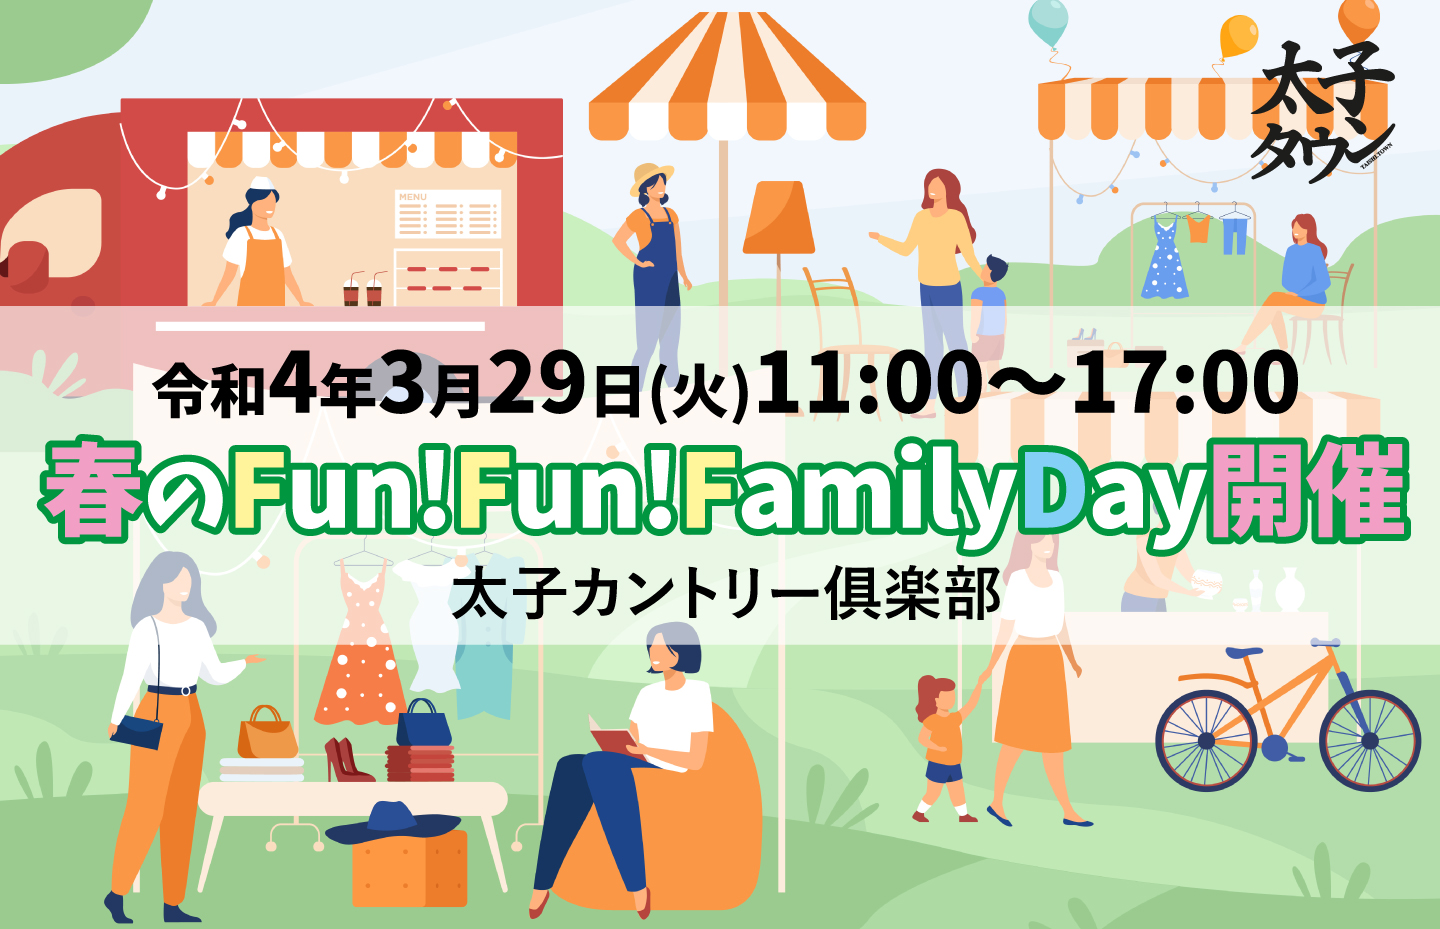 春のFun!Fun!FamilyDay開催